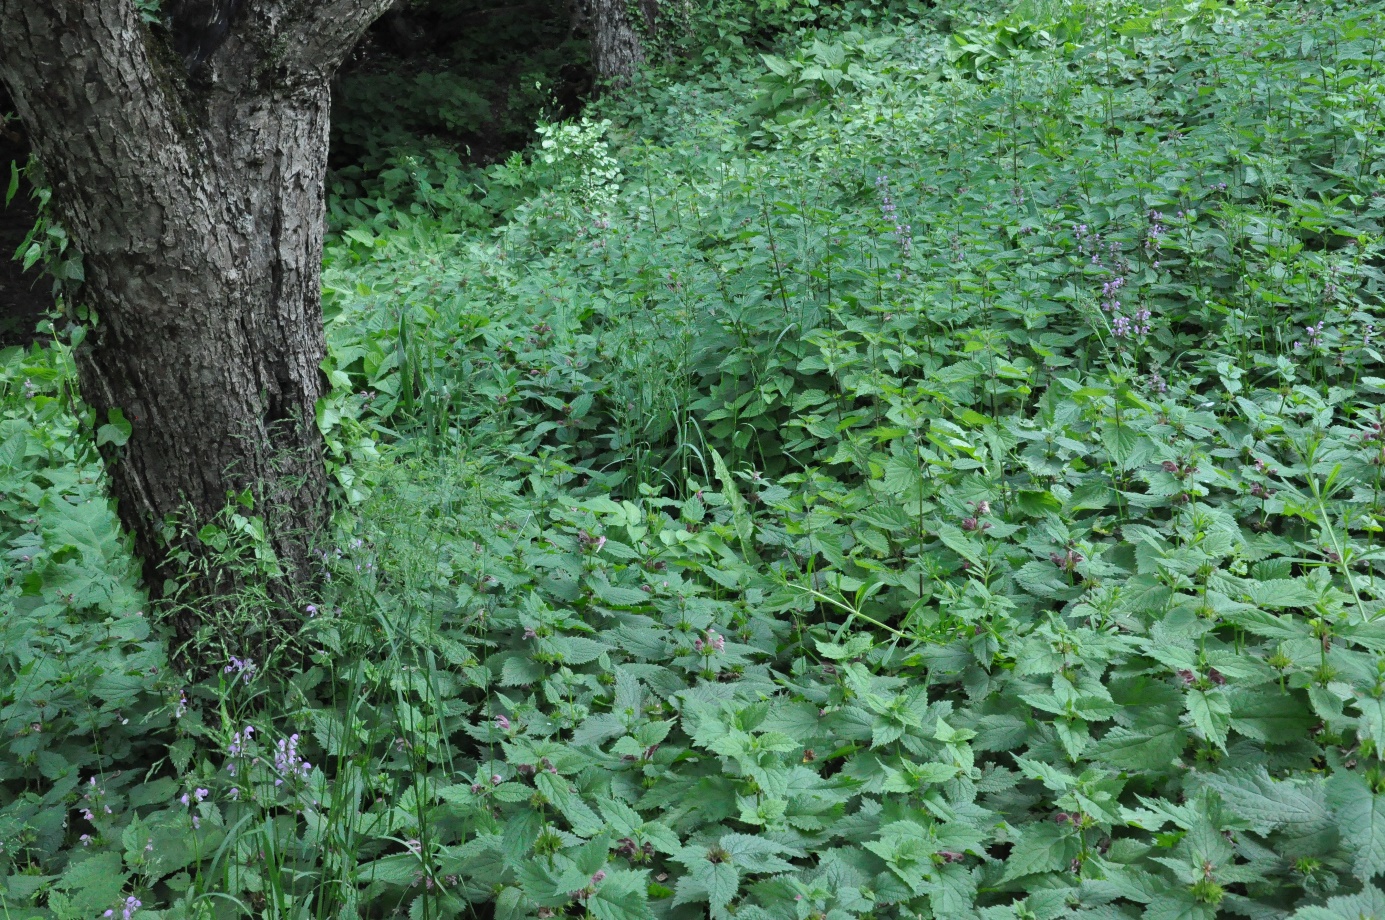 V senčnem delu gozdnega roba KG Andrejevi prevladujejo mrtve koprive, ki sodijo med najbolj priljubljene hranilne rastline za divje opraševalce – čmrlje. Foto: dr. Sonja Škornik